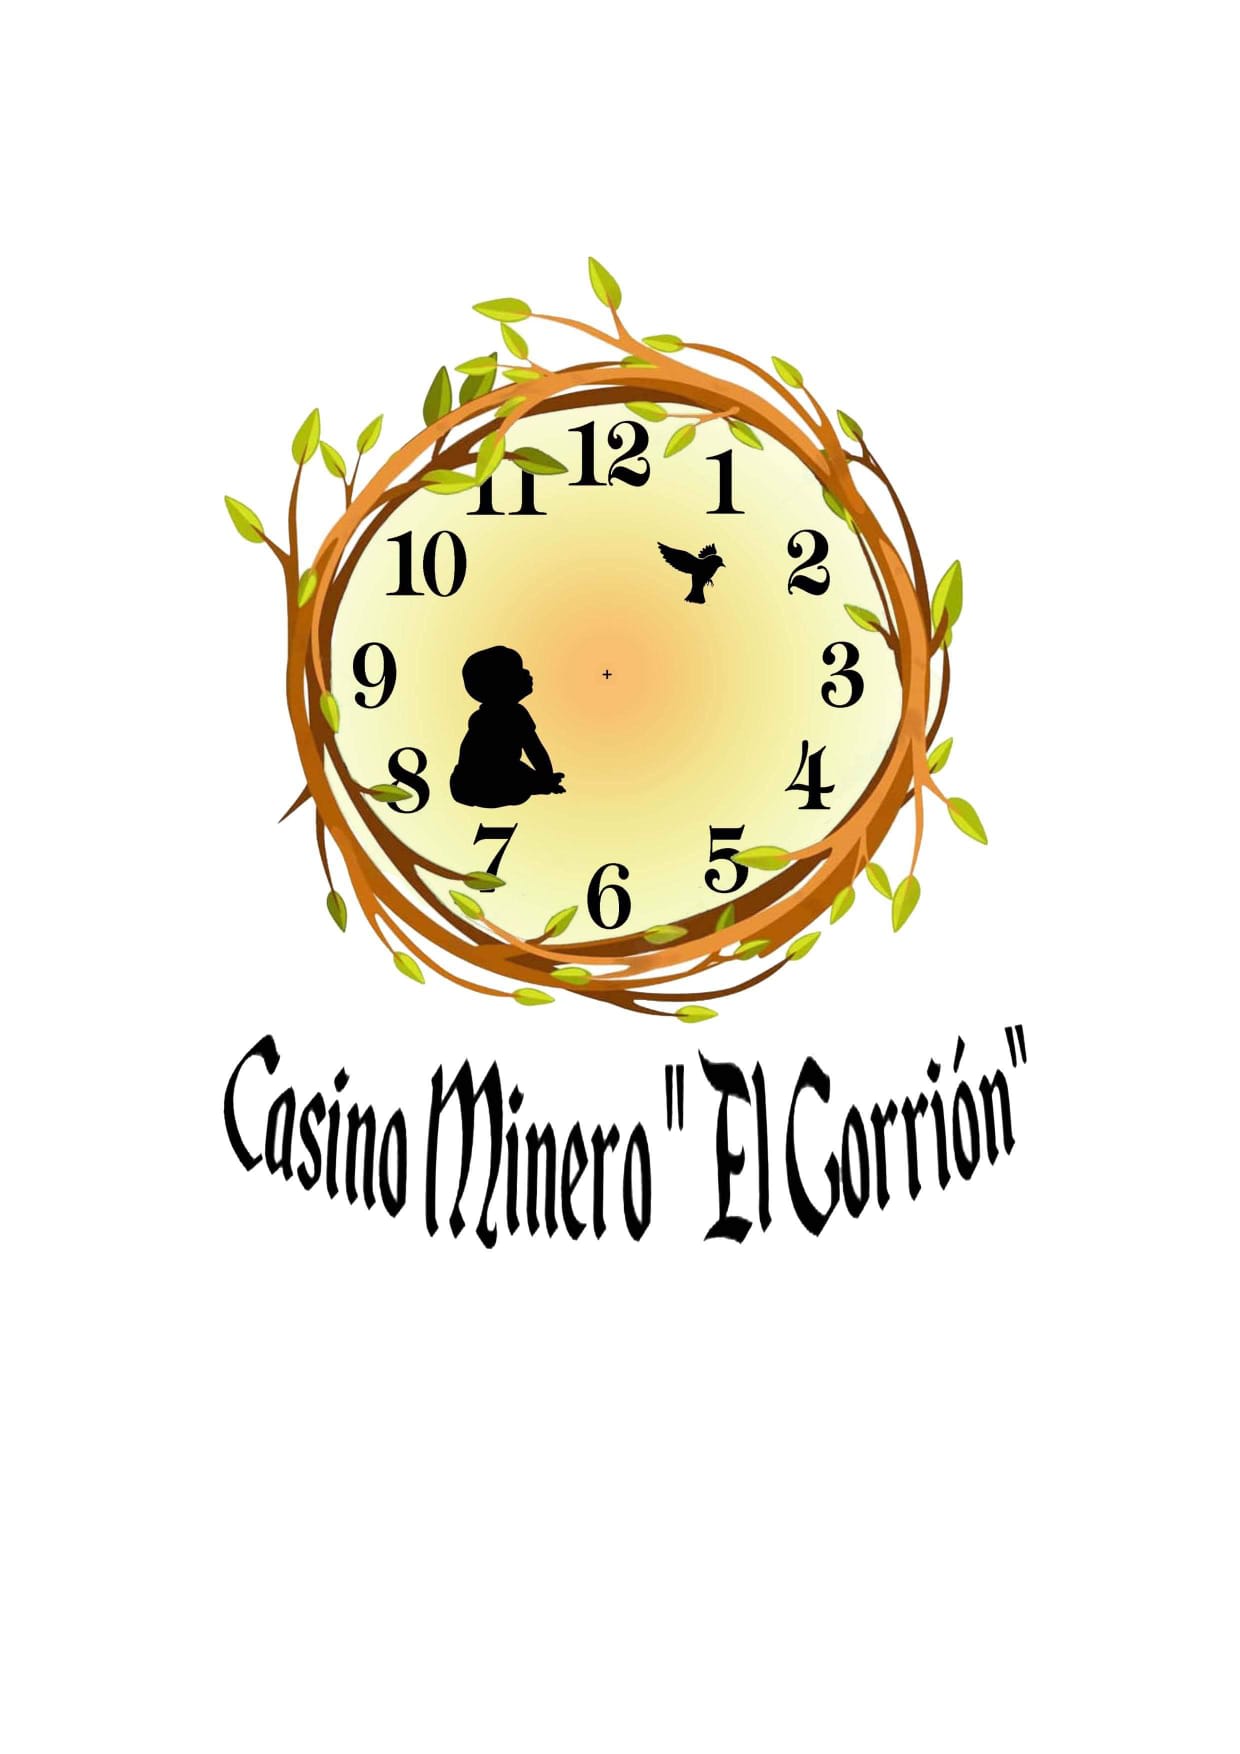 Casino Minero El "Gorrión"